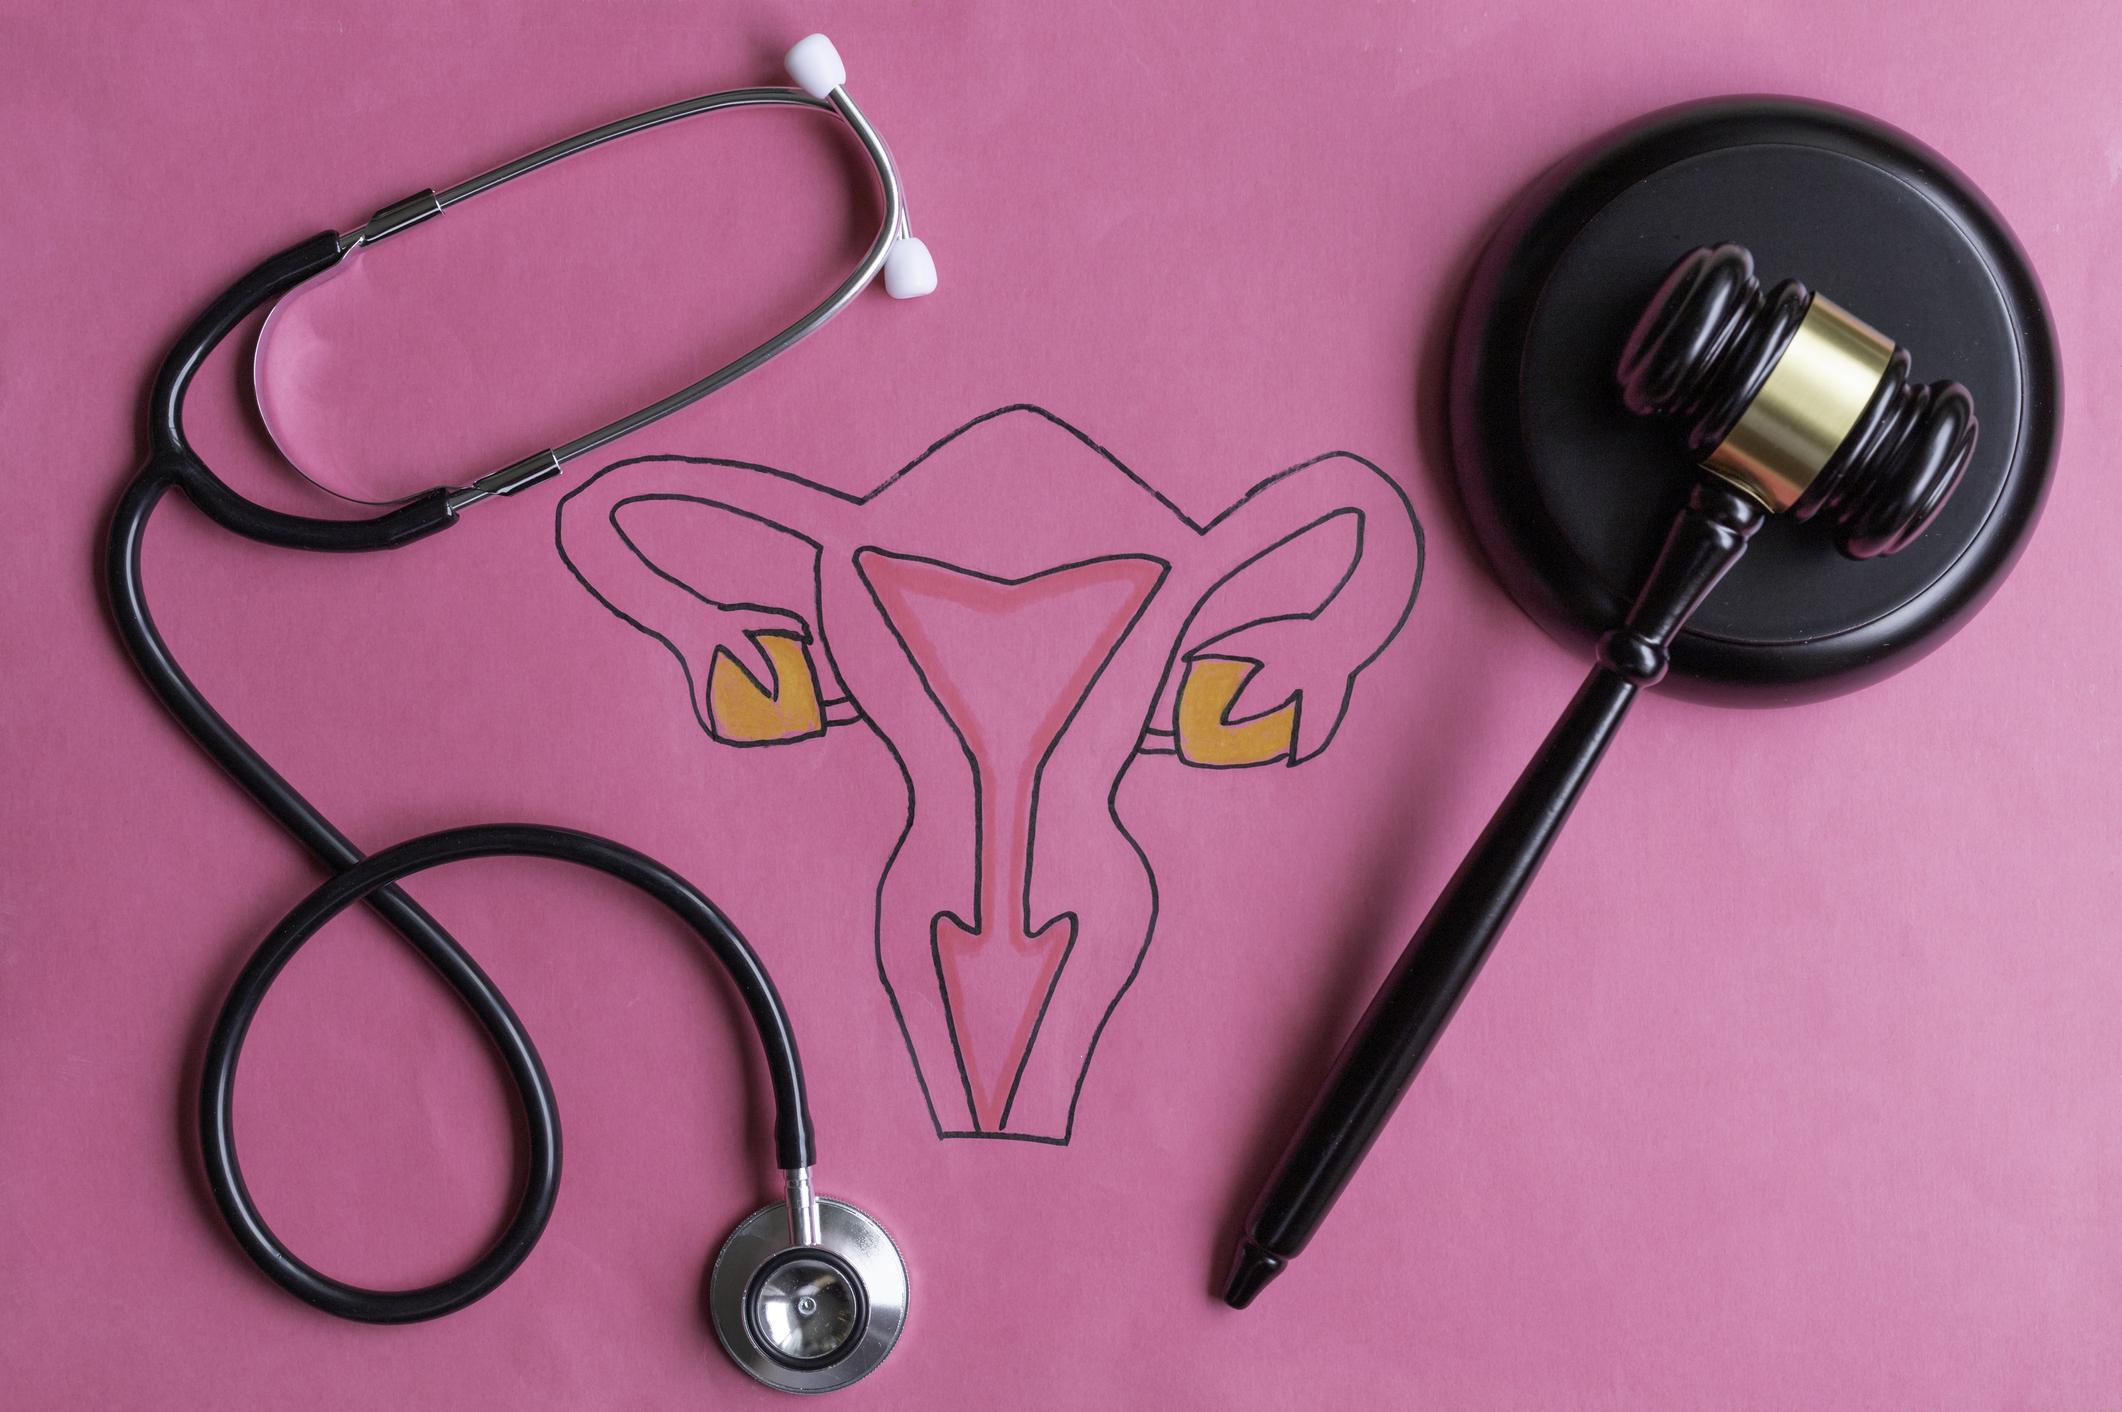 IVG instrumentale : les sages-femmes seront bientôt habilitées à la pratiquer à l’hôpital